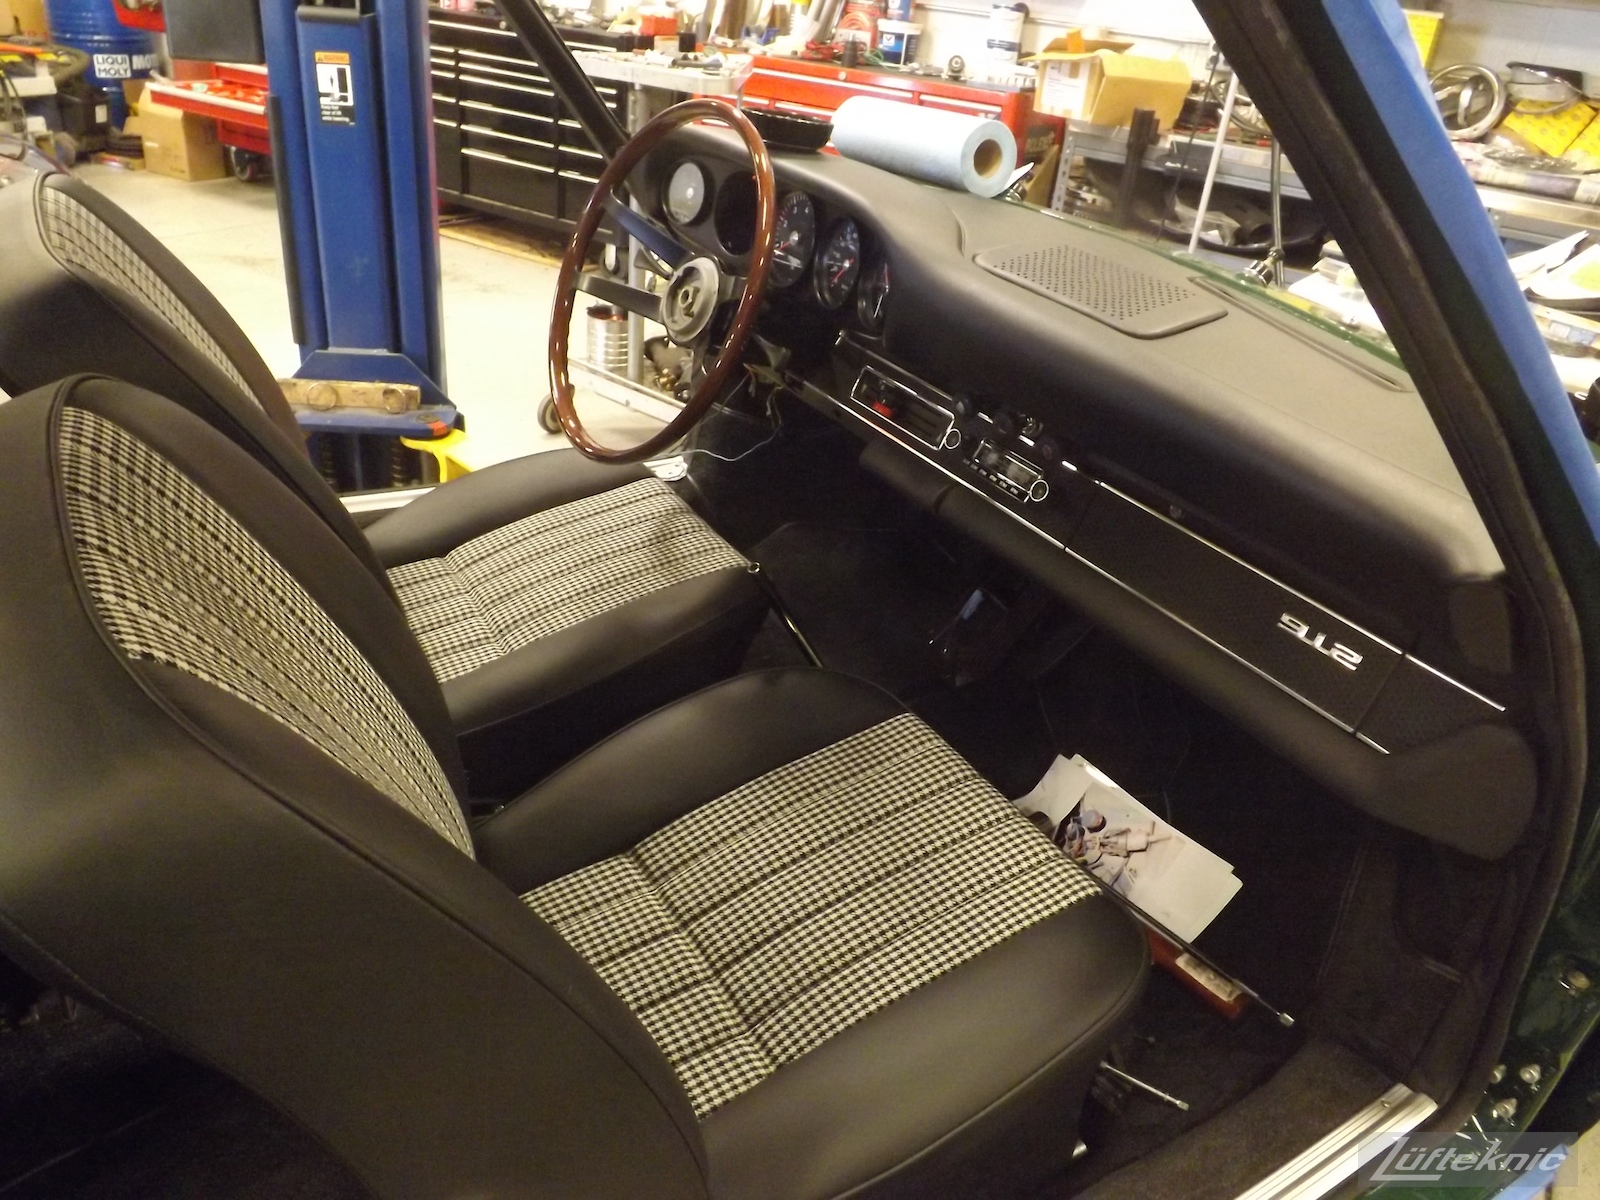 Fresh seats, dashboard and wood rim steering wheel installed in an Irish Green Porsche 912 undergoing restoration at Lufteknic.